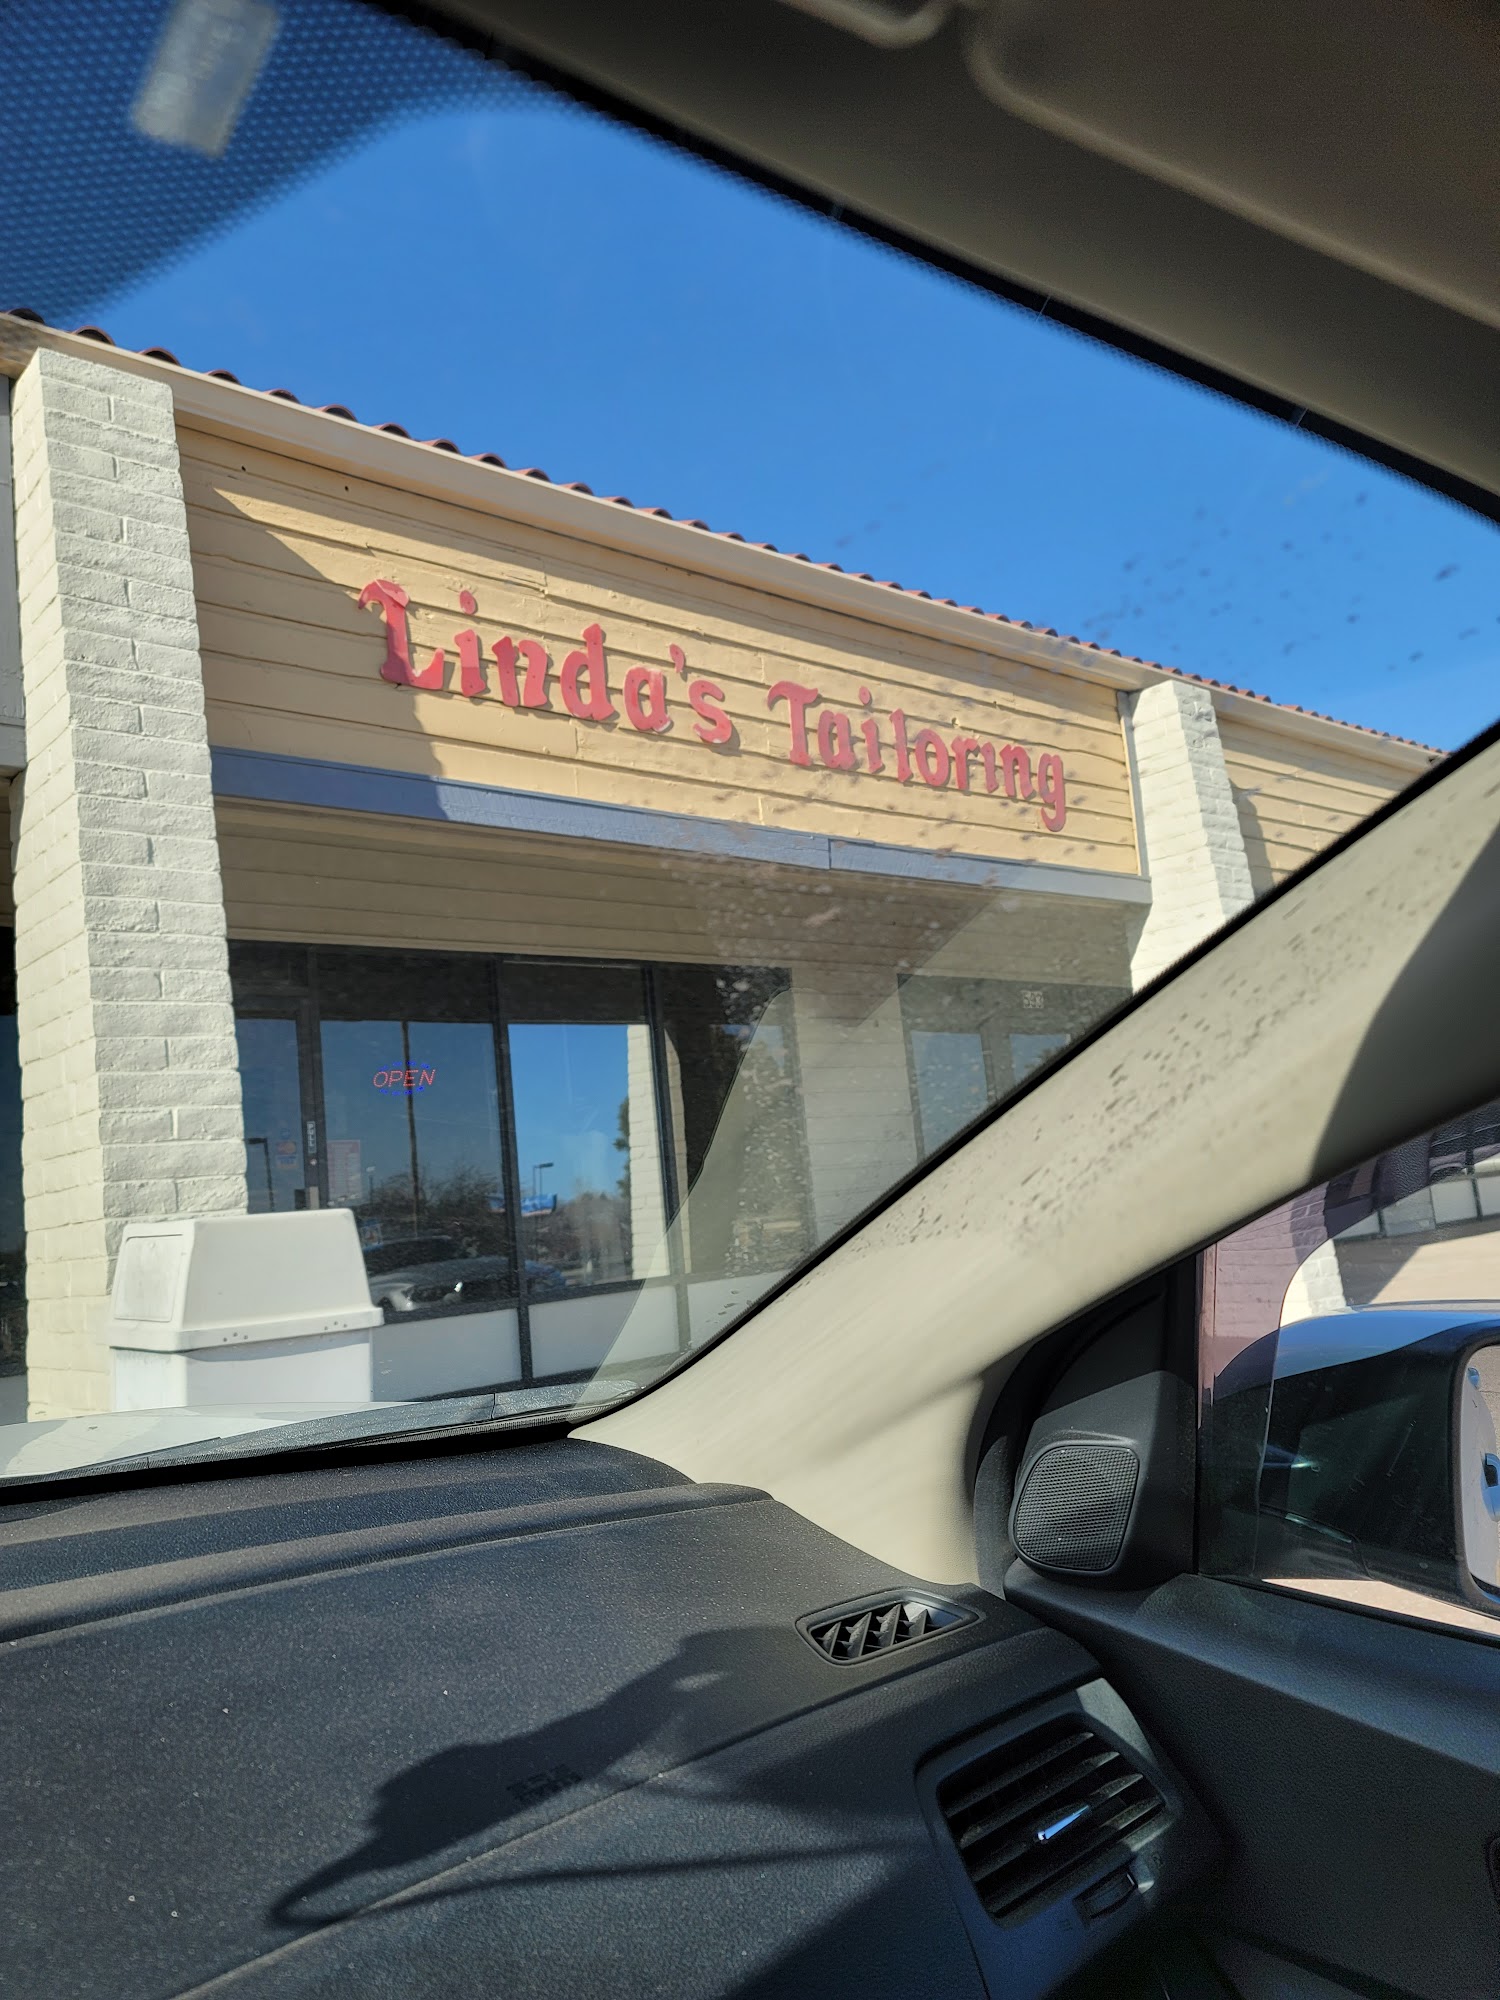 Linda's Tailoring